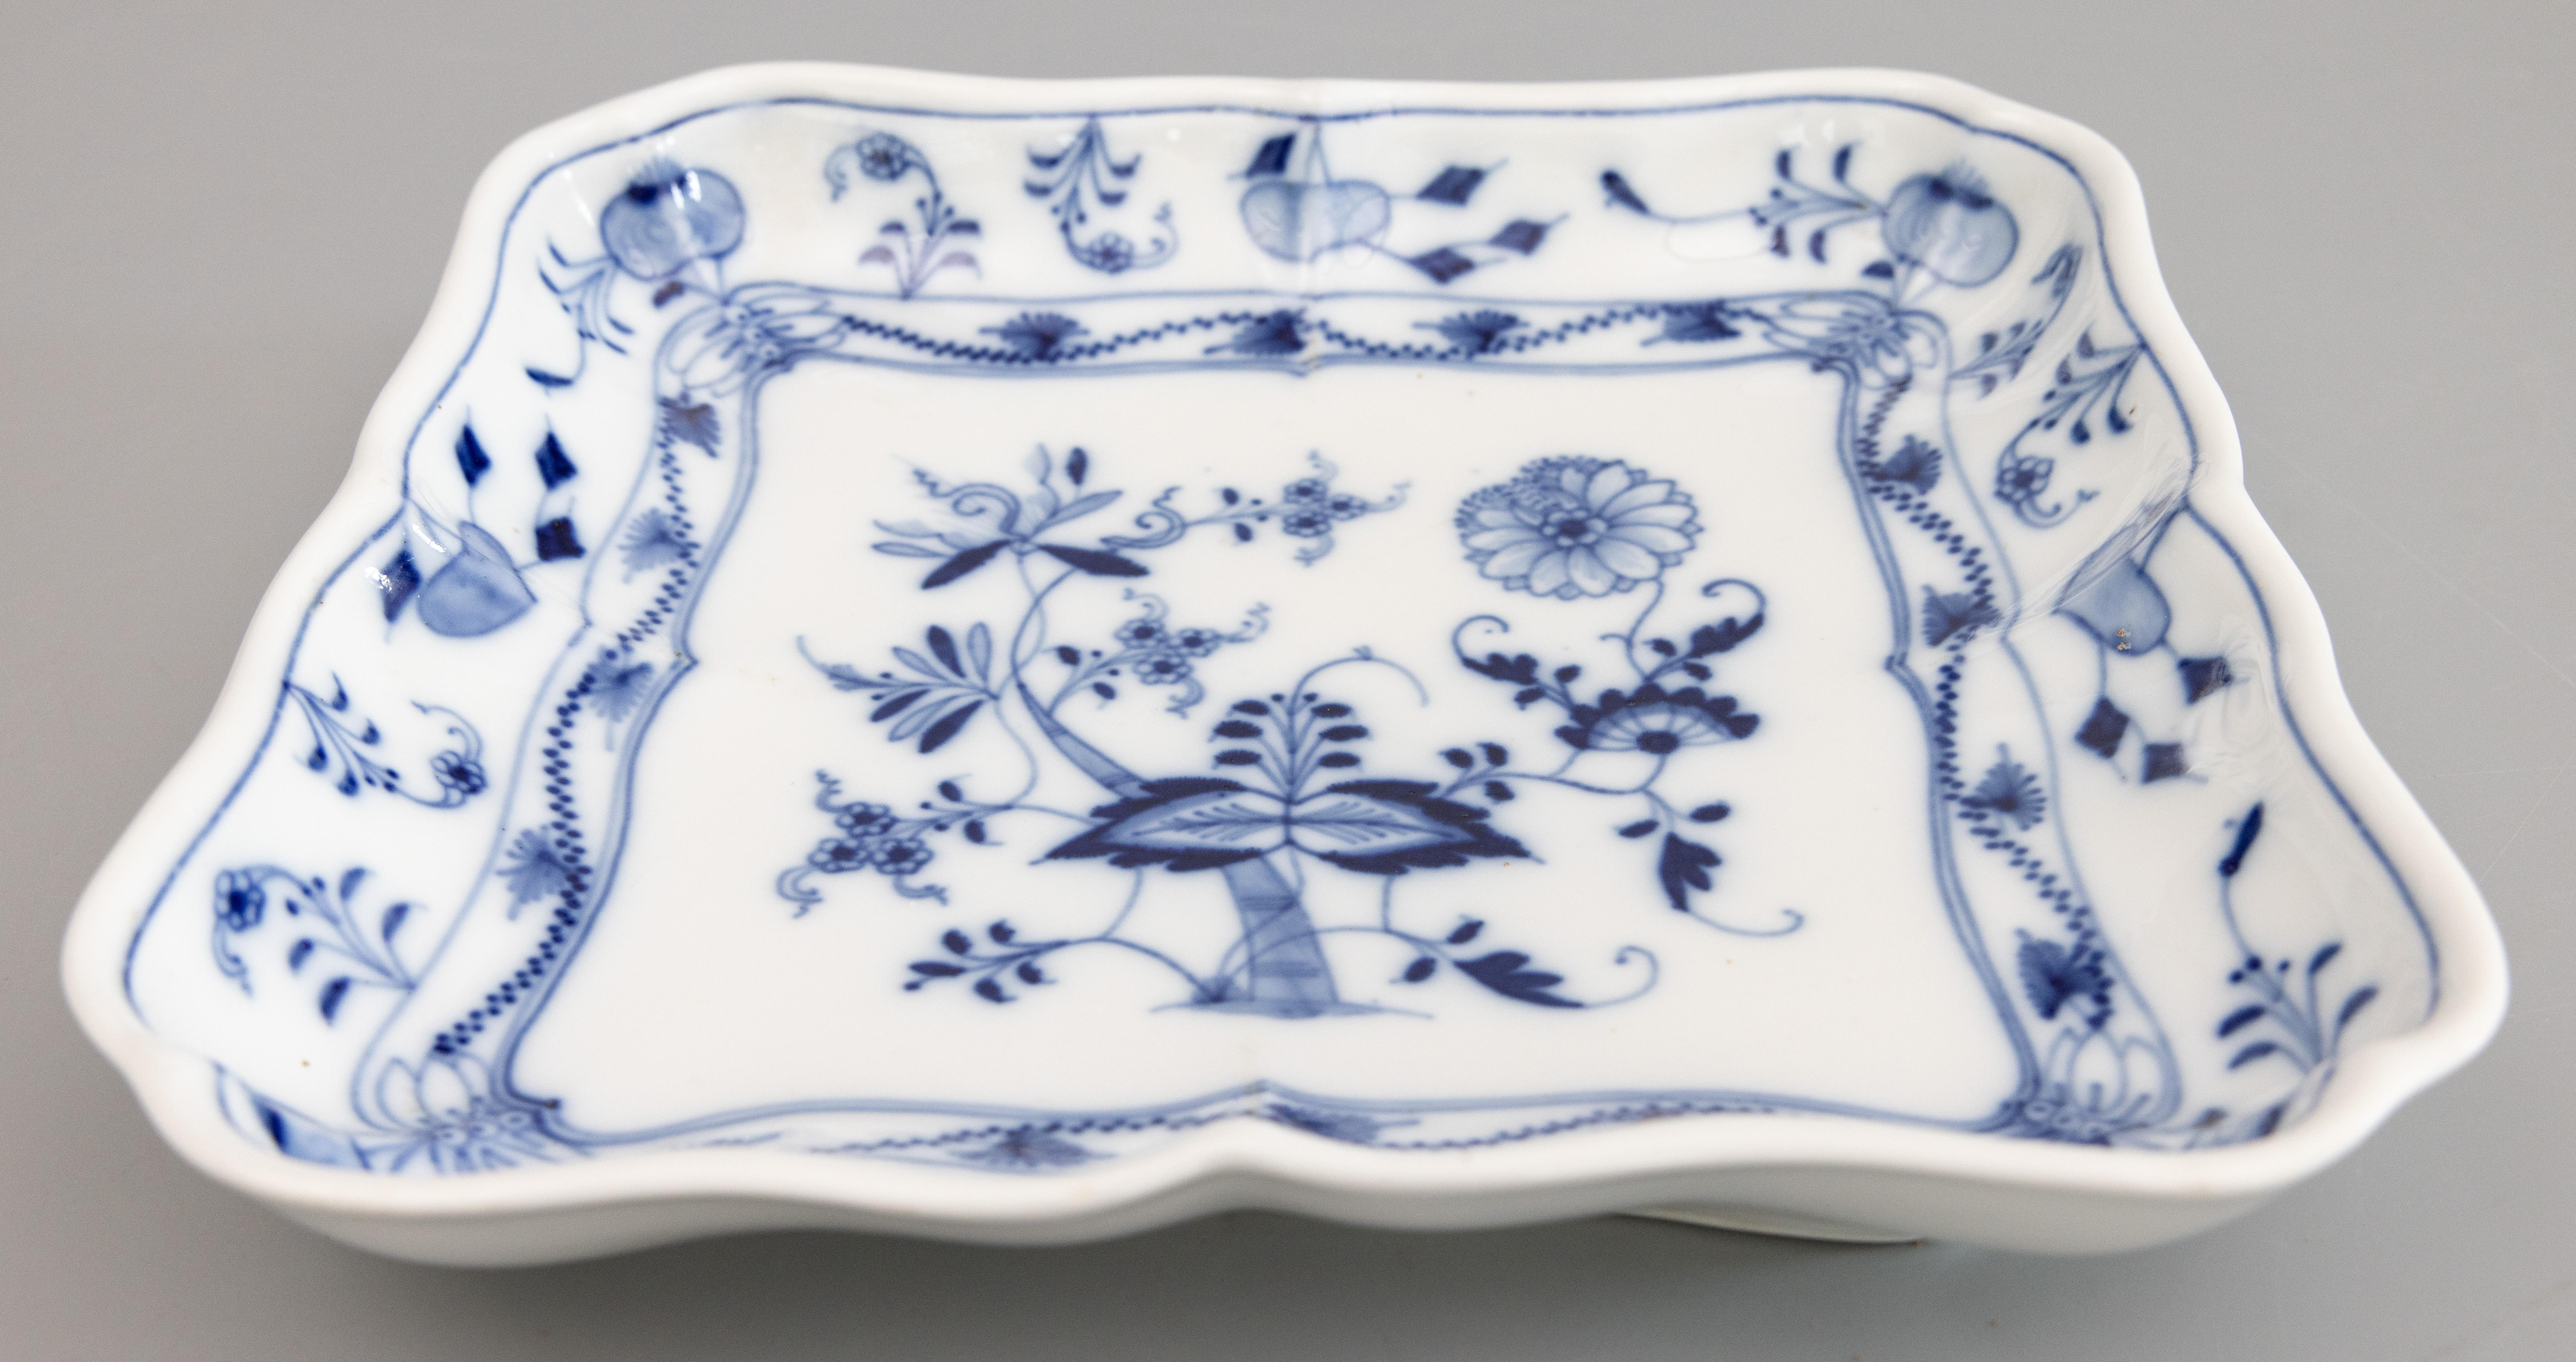 Ravissant plat ancien en porcelaine bleue de Meissen du début du 20e siècle, peint à la main en forme de carré d'oignon, avec un bord festonné. Marque imprimée et imprimée 